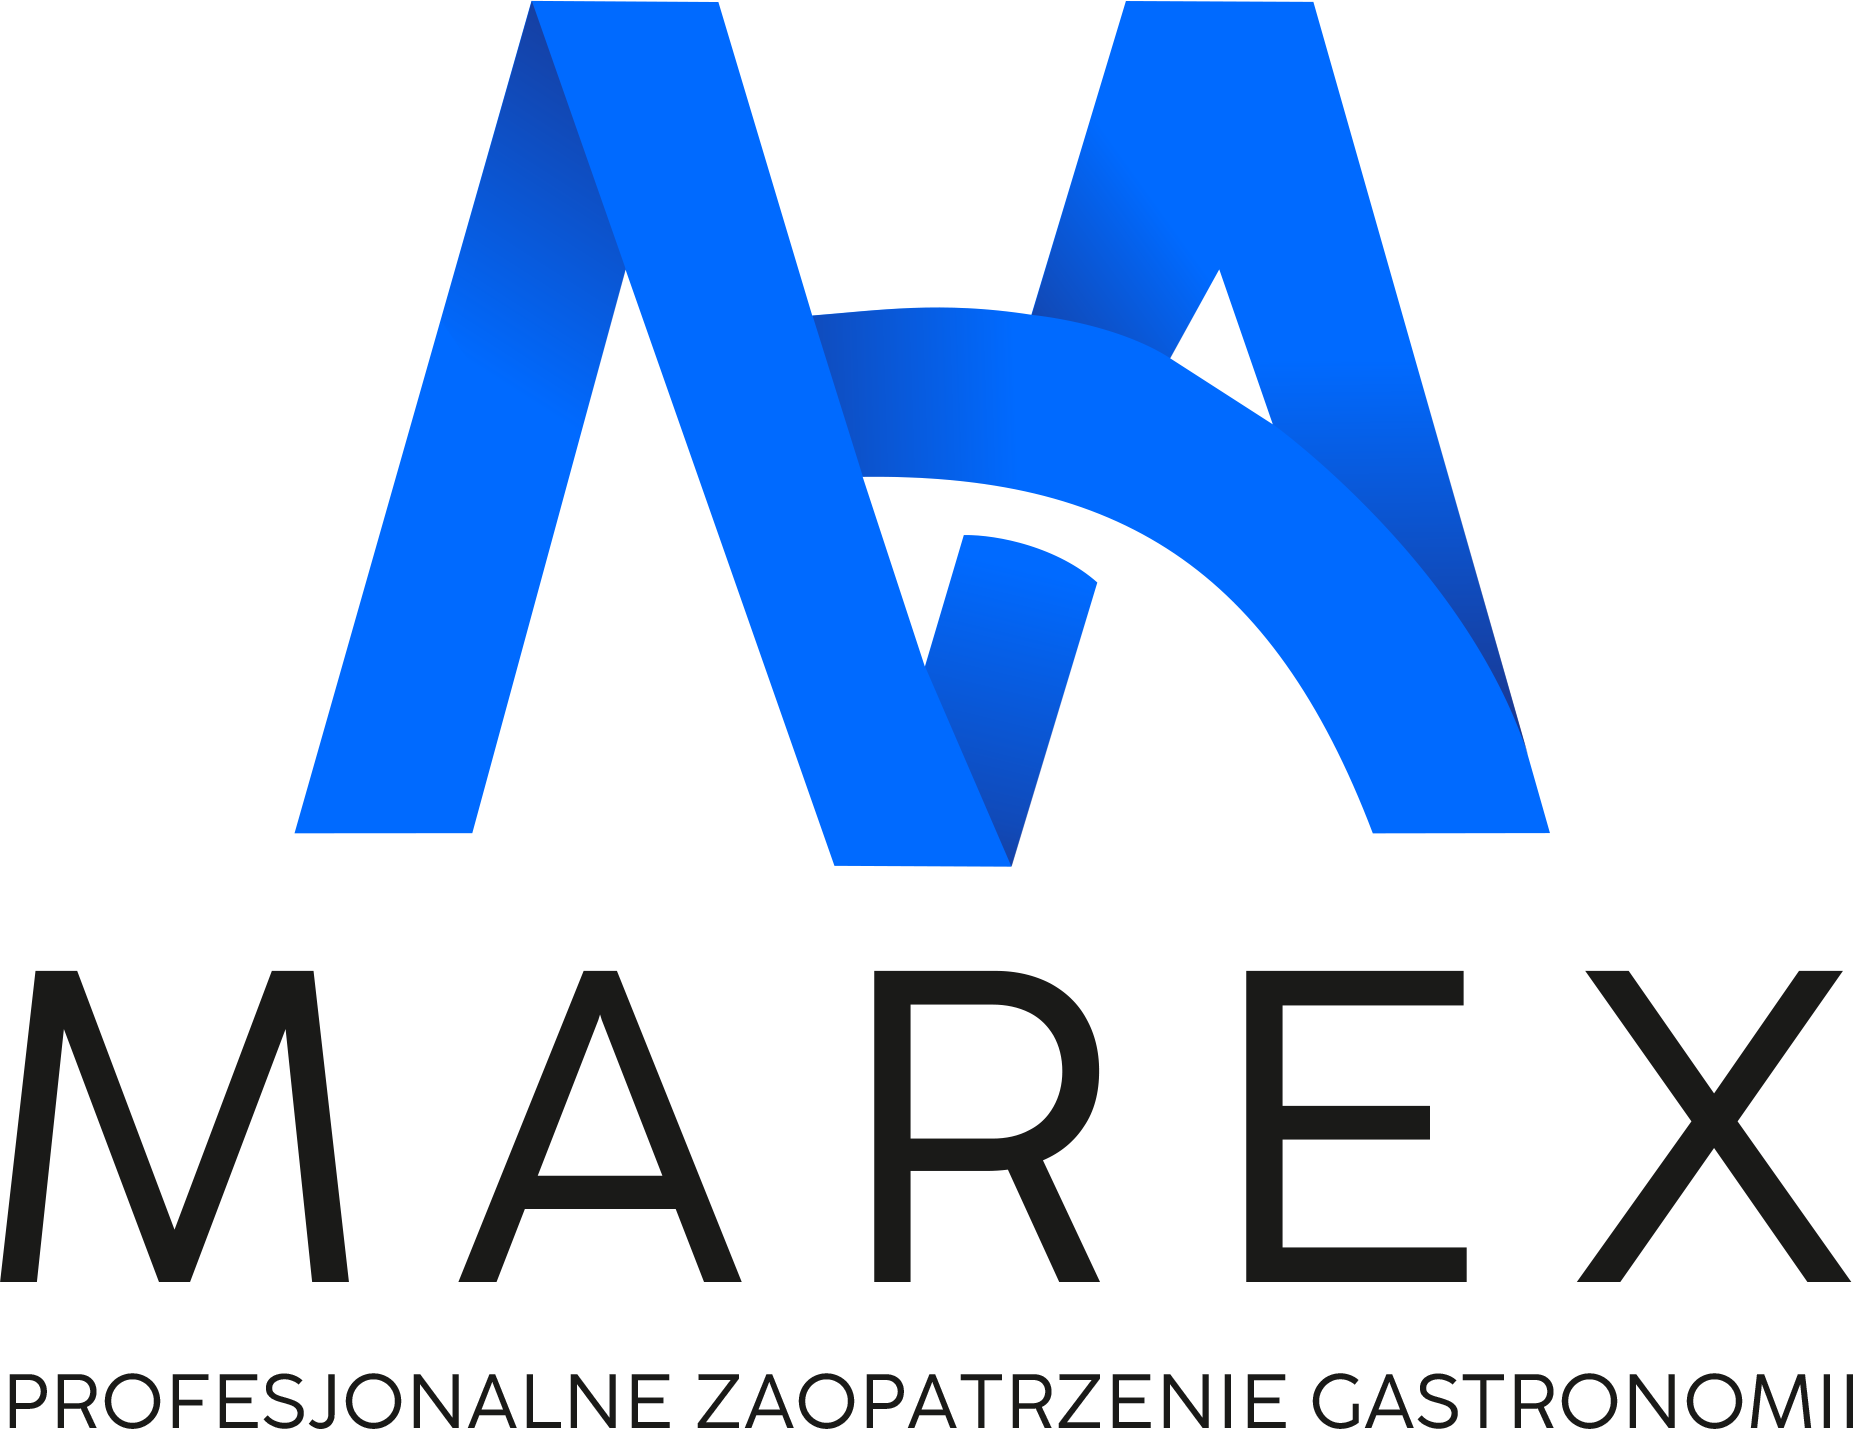 MAREX – Profesjonalne Zaopatrzenie Gastronomii